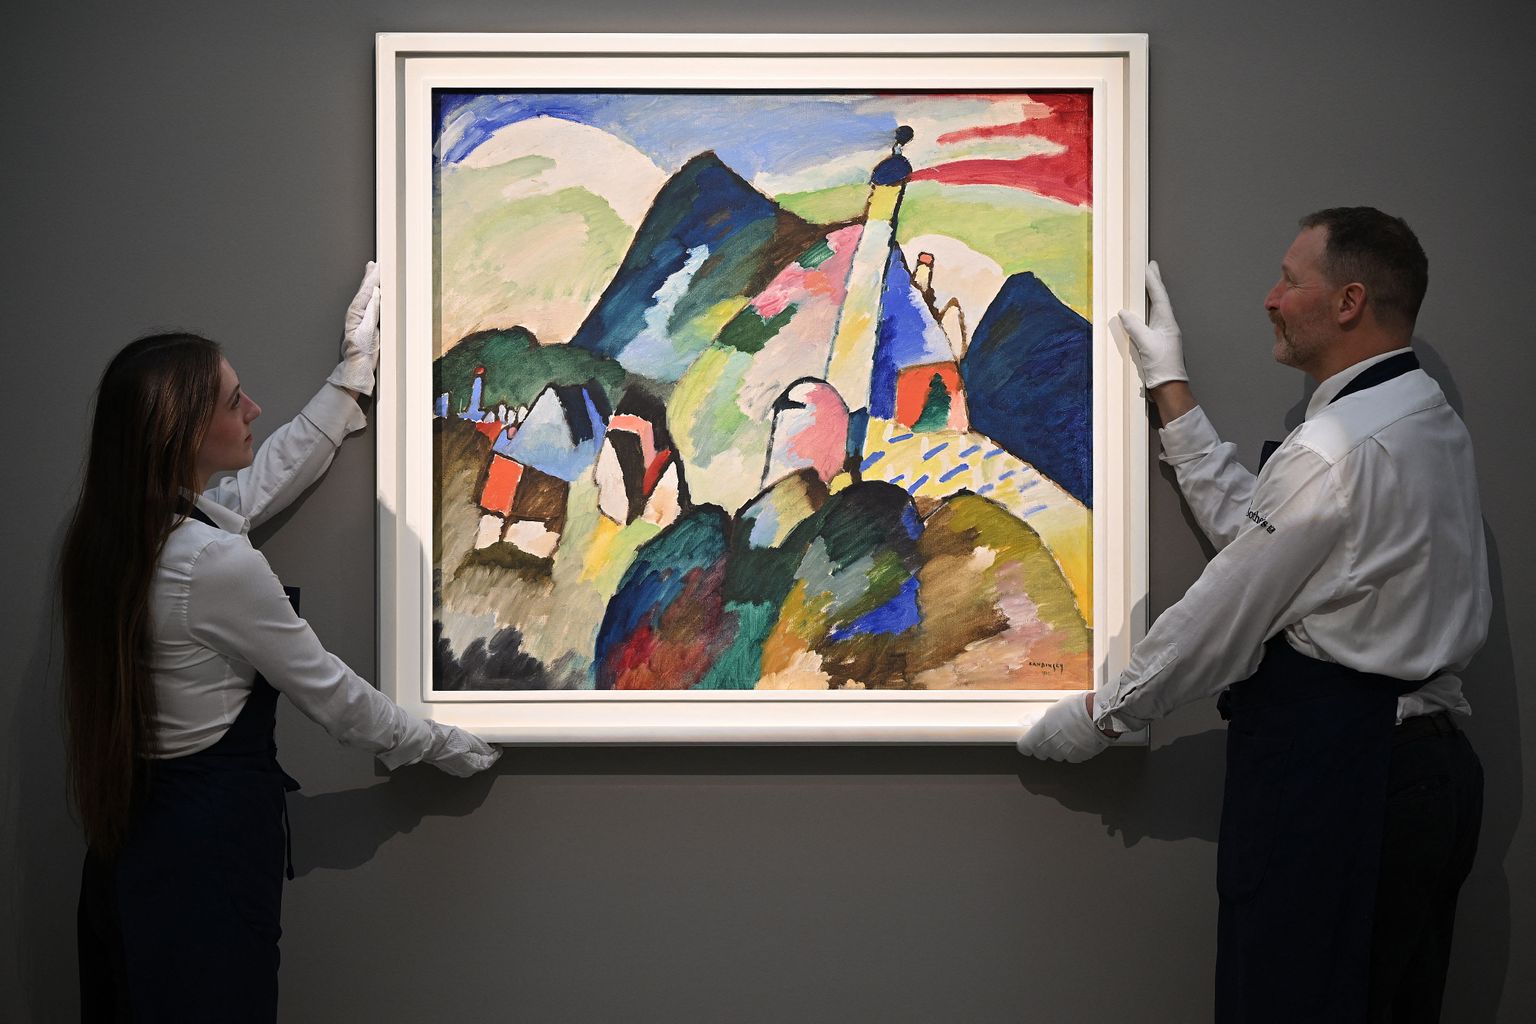 Värvirikas Kandinsky maal müüdi 42 miljoni euro eest.